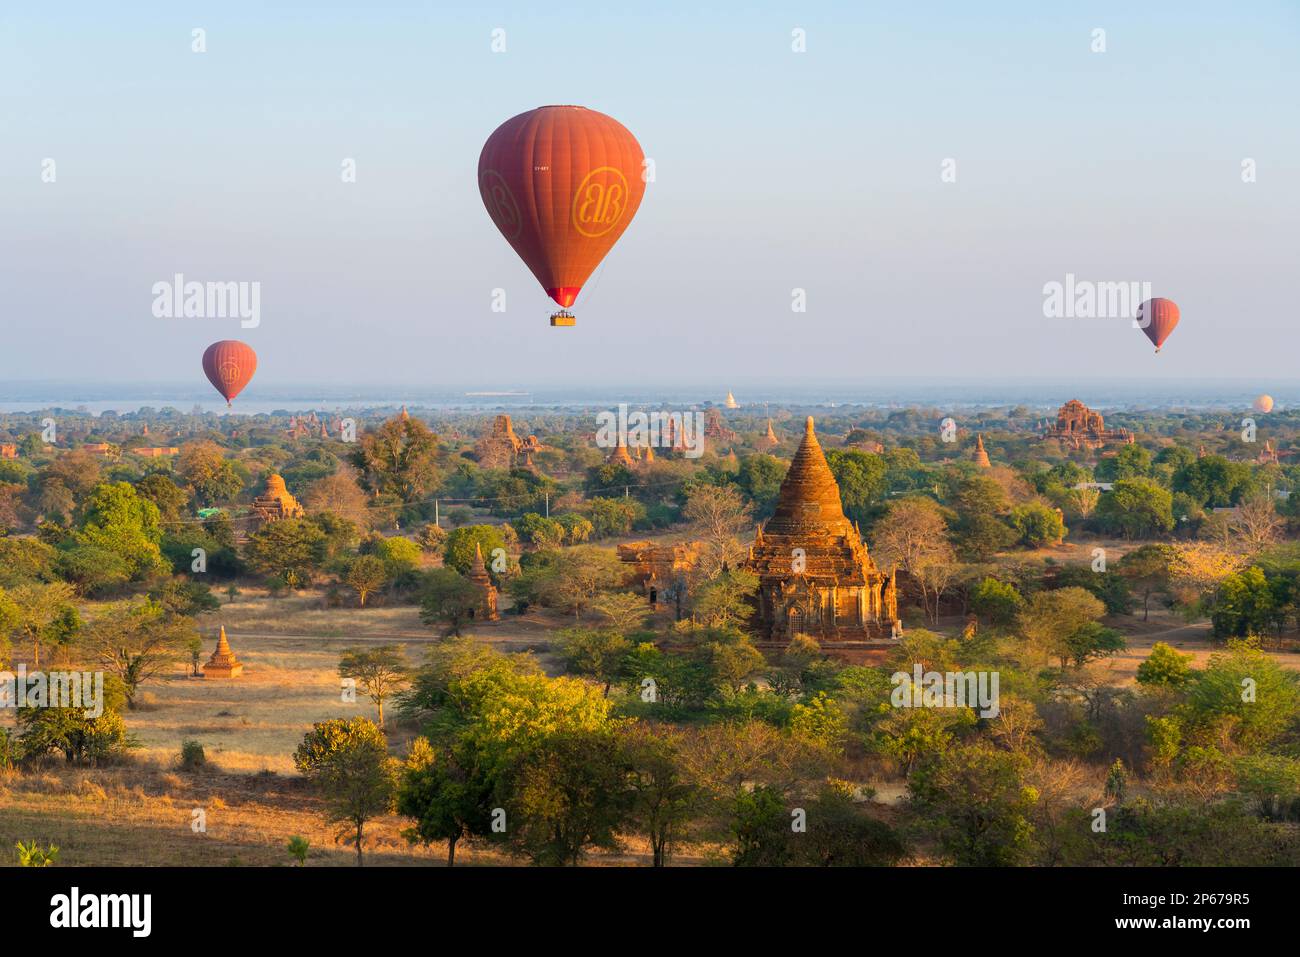 Antiguos templos en Bagan y globos aerostáticos al amanecer, Bagan (Pagán), Patrimonio de la Humanidad de la UNESCO, Myanmar (Birmania), Asia Foto de stock